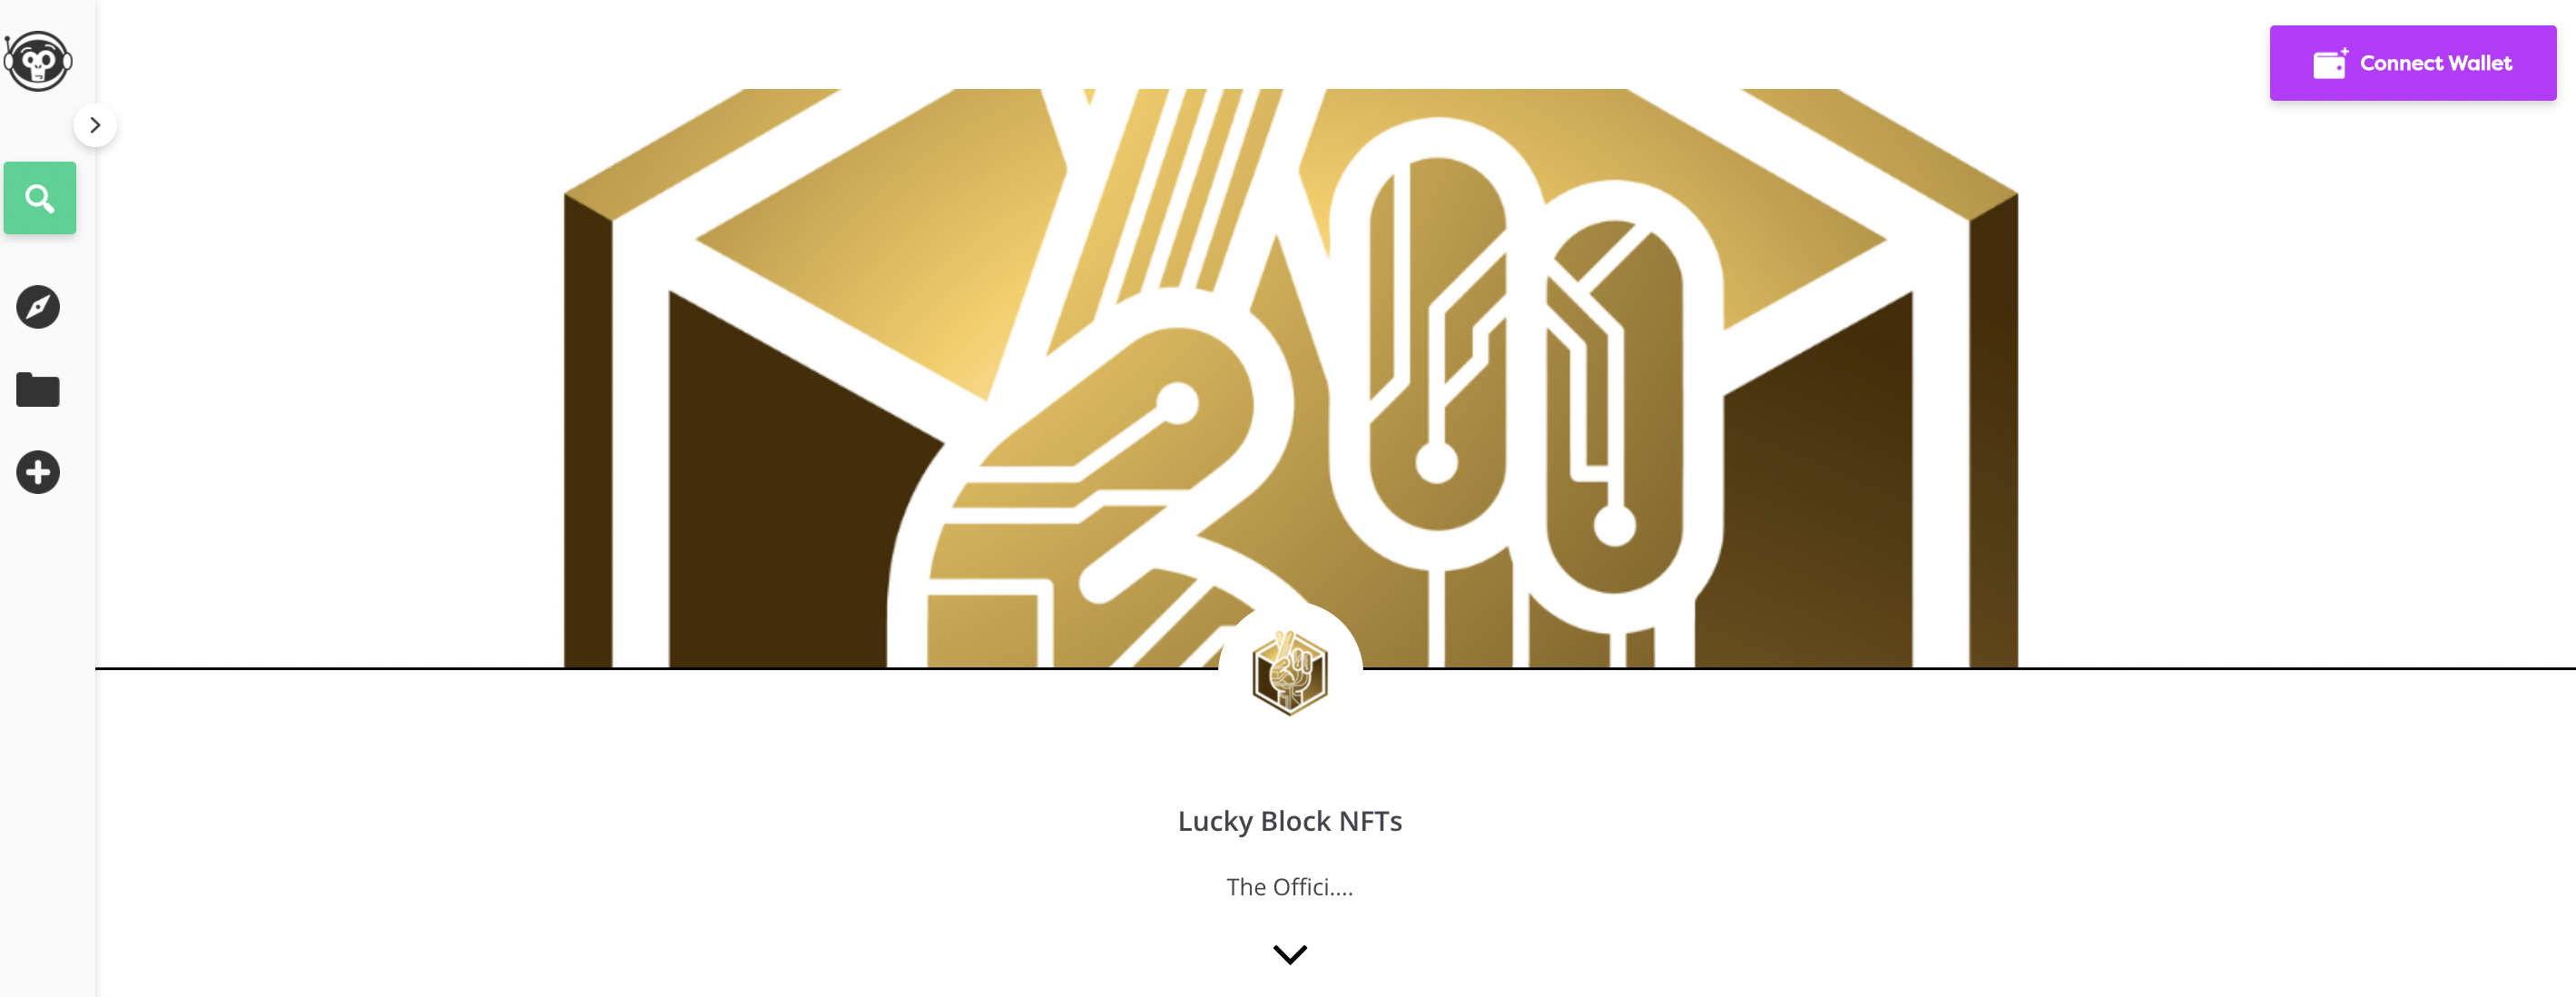 ซื้อ lucky block NFT